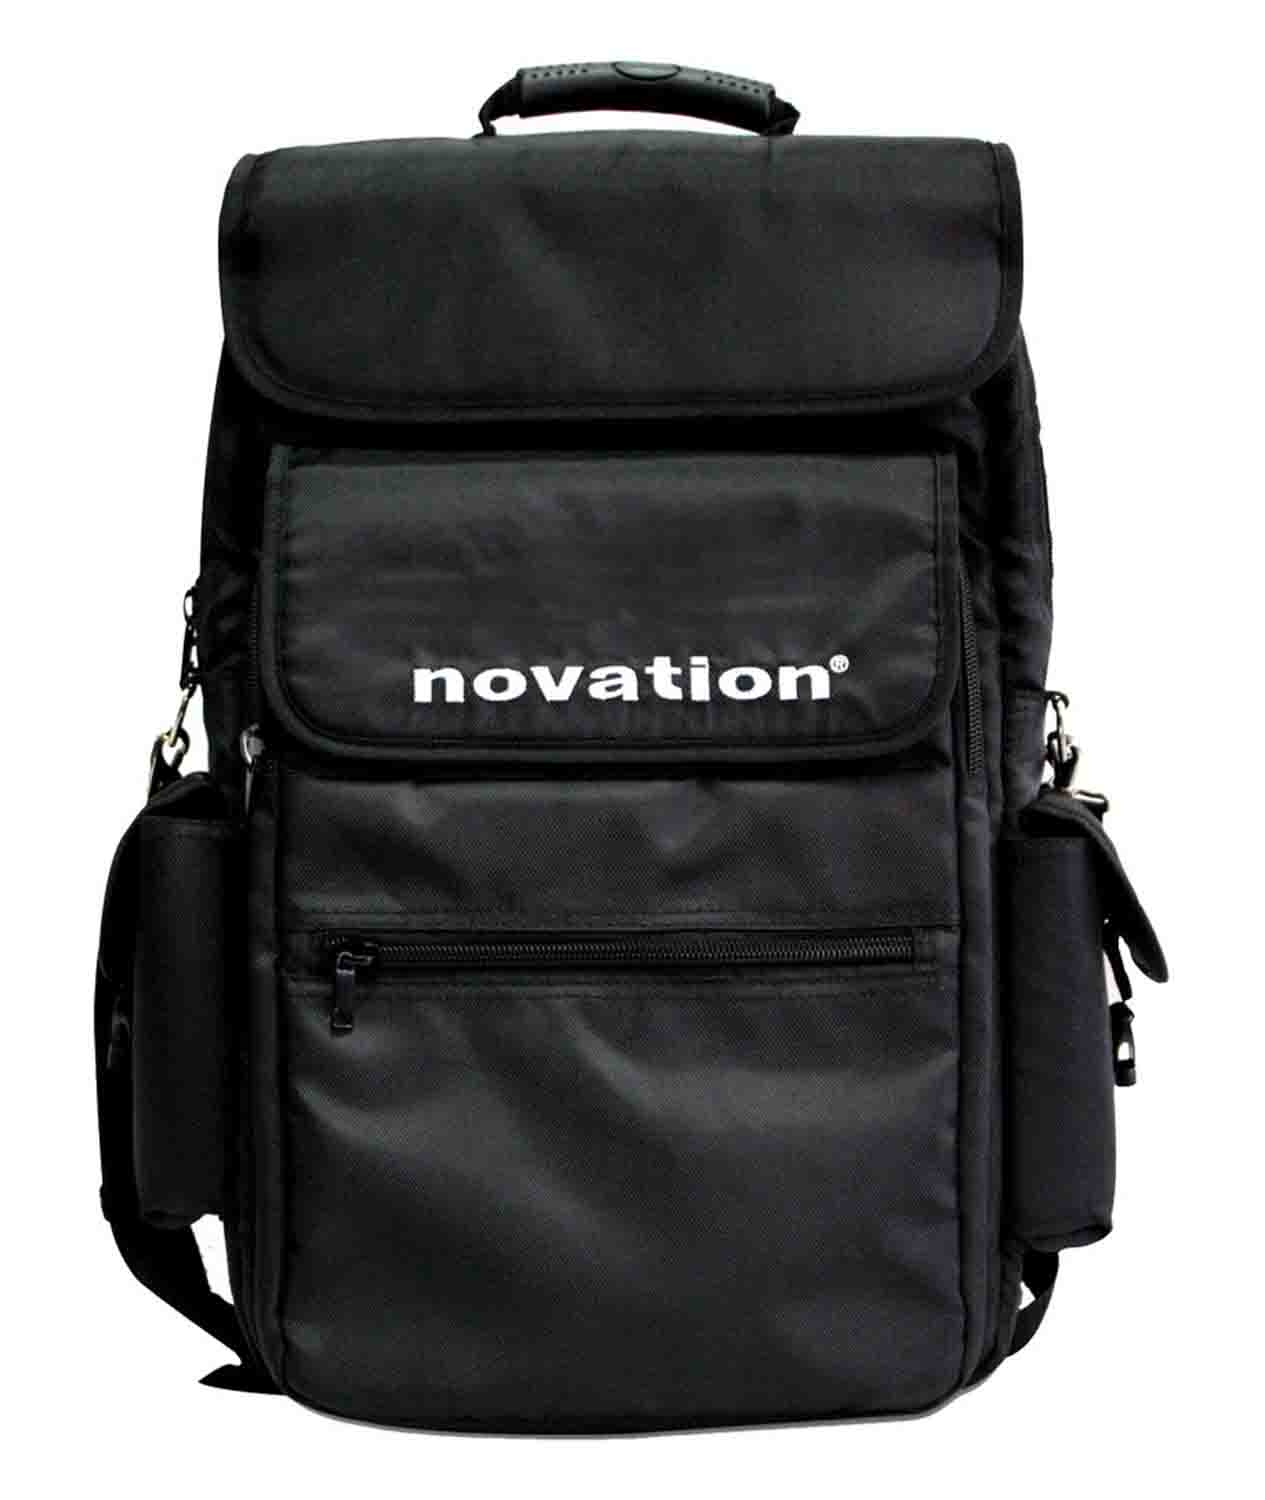 Novation NOV-25-CASE Gig Bag for Impulse 25 and SL MKII 25 Controllers - Black - Hollywood DJ